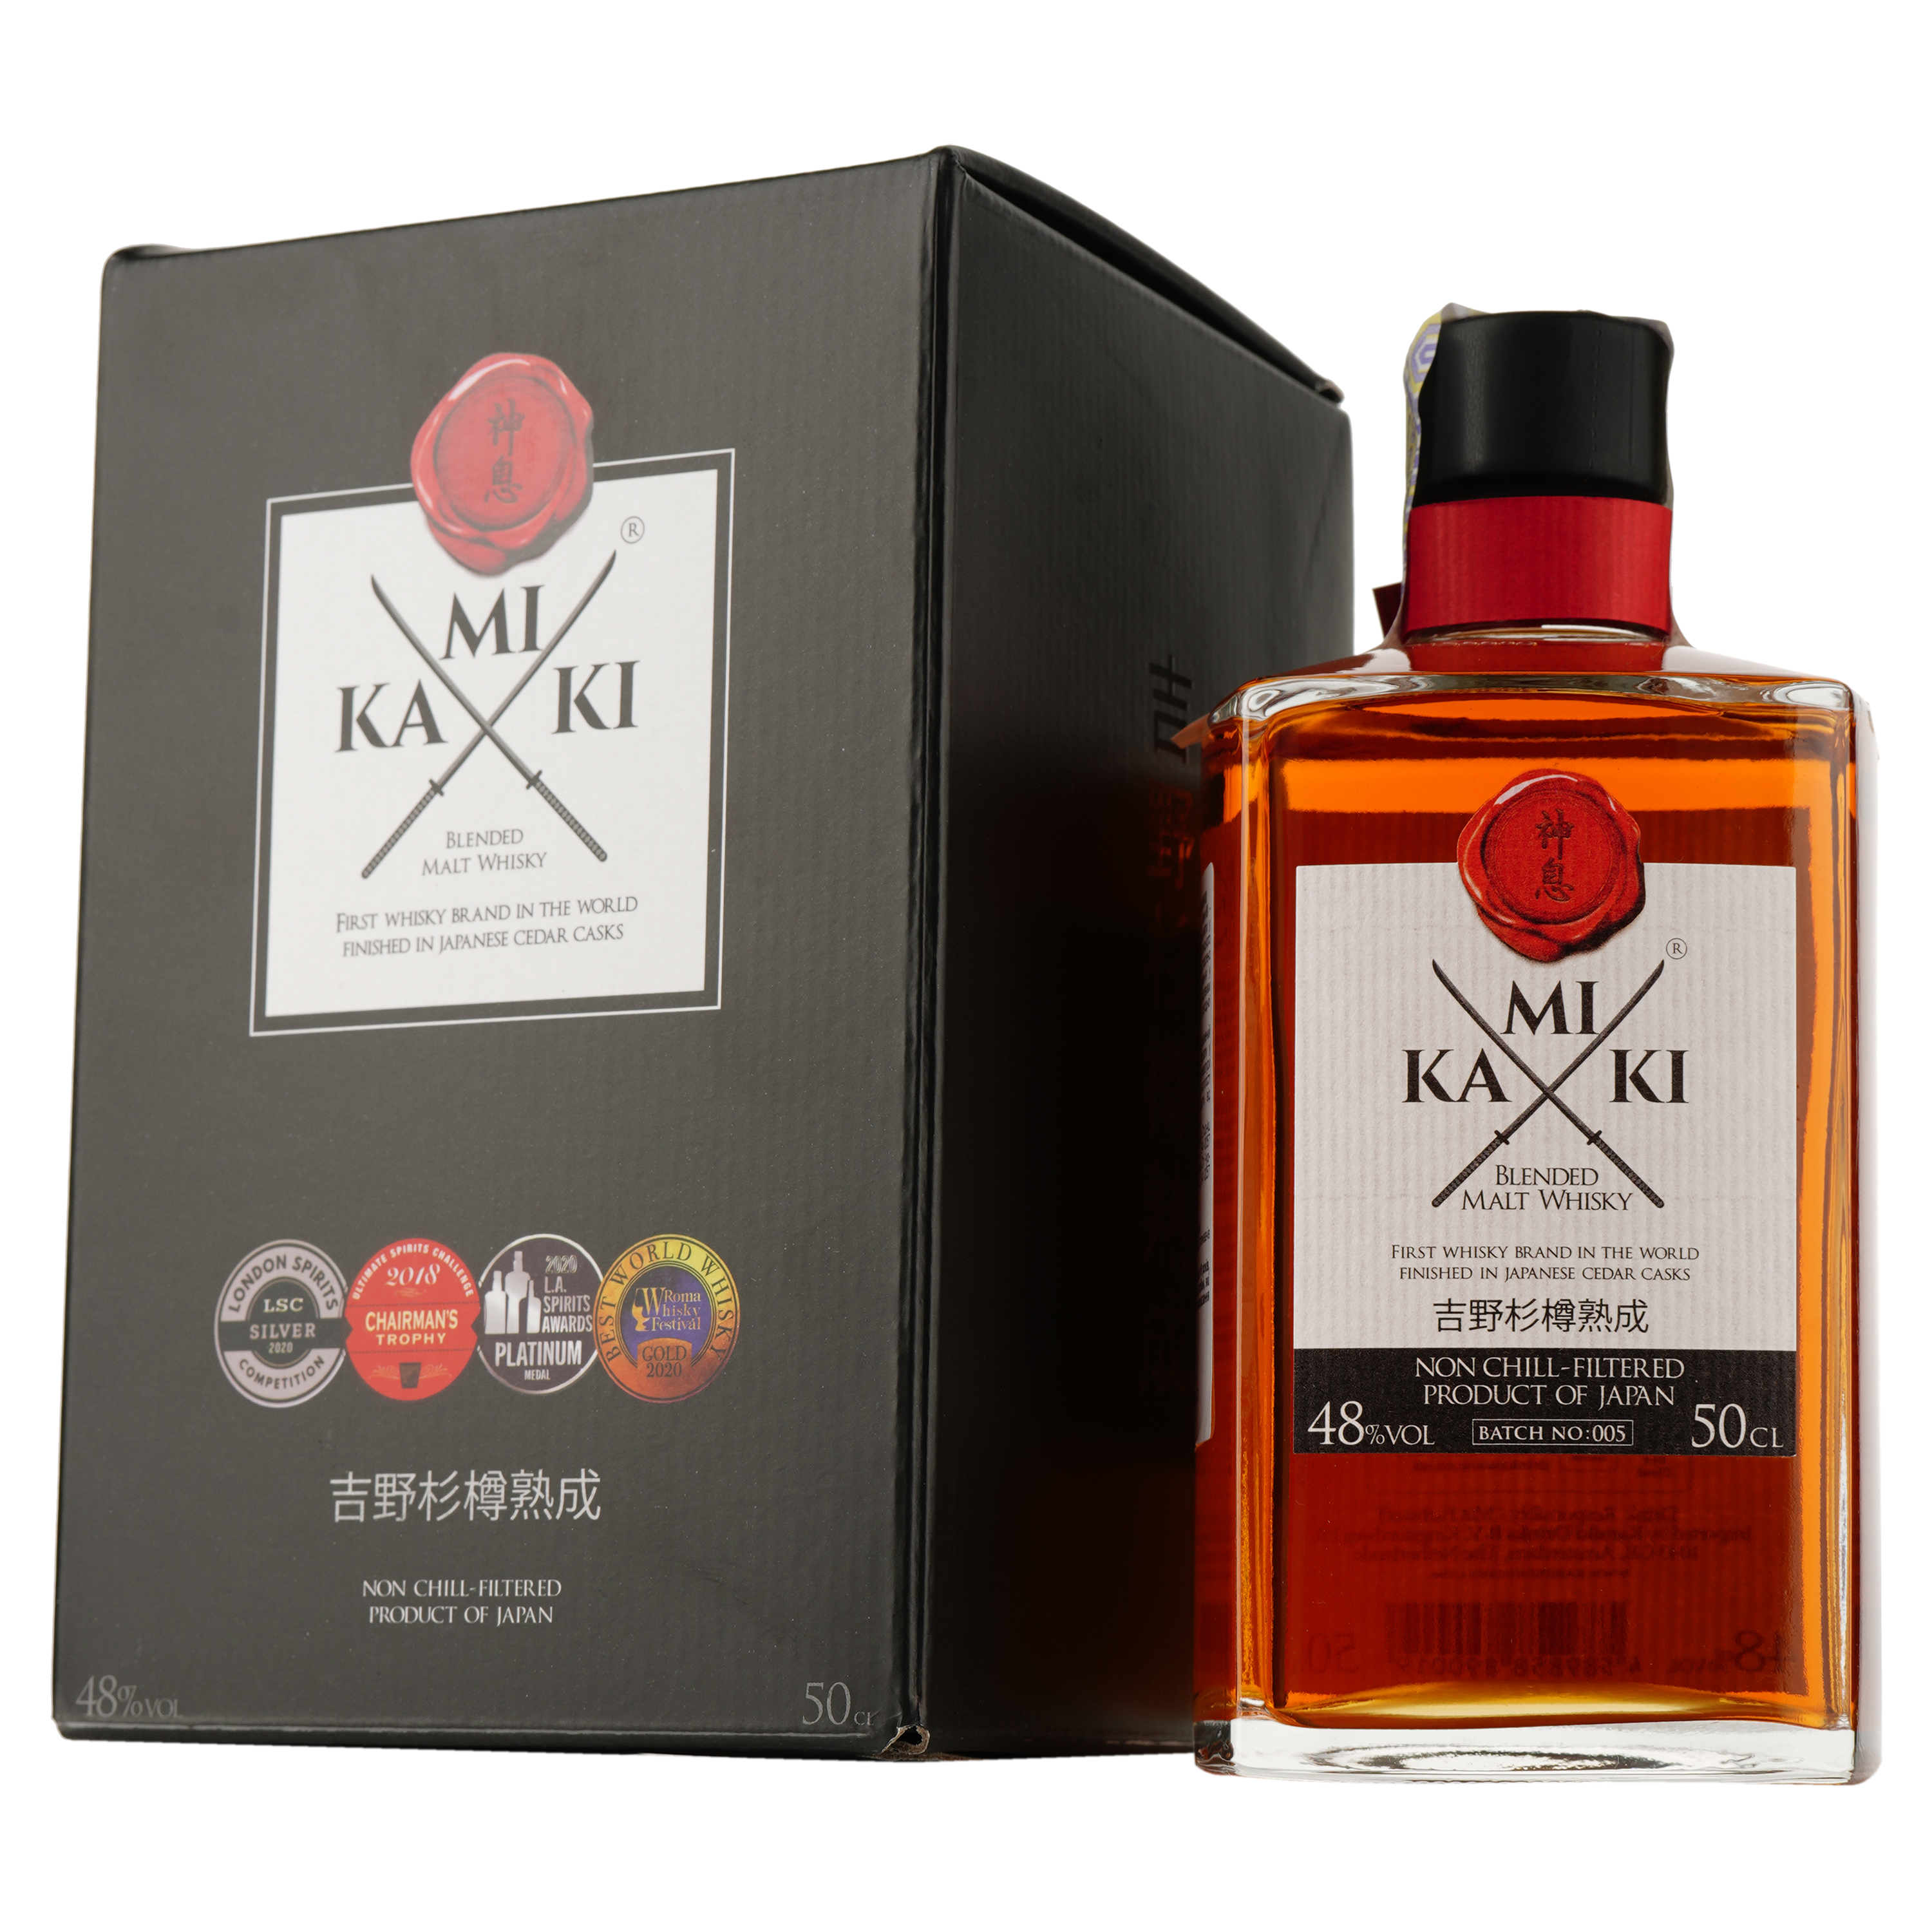 Віскі Kamiki Original Non-Chilled Filtered Blended Malt Whiskey, 48%, 0,5 л (827263) - фото 1